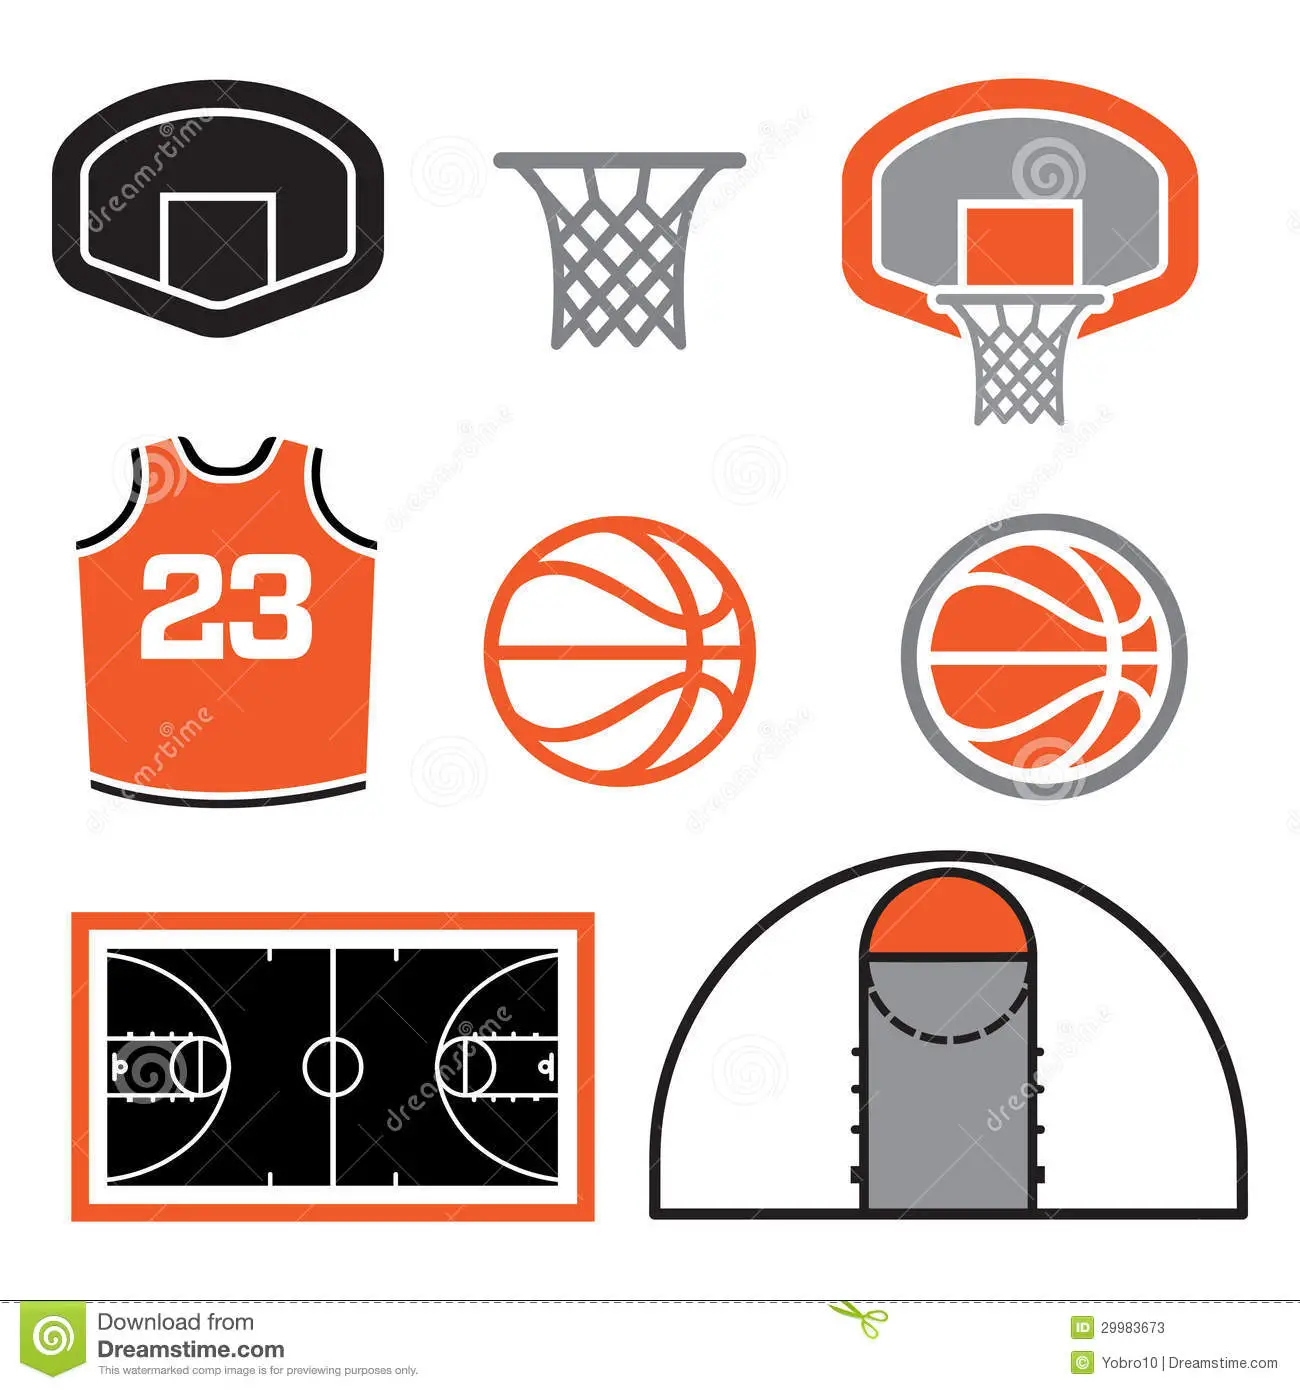 Cuáles son los 4 elementos básicos del baloncesto? - Haras Dadinco